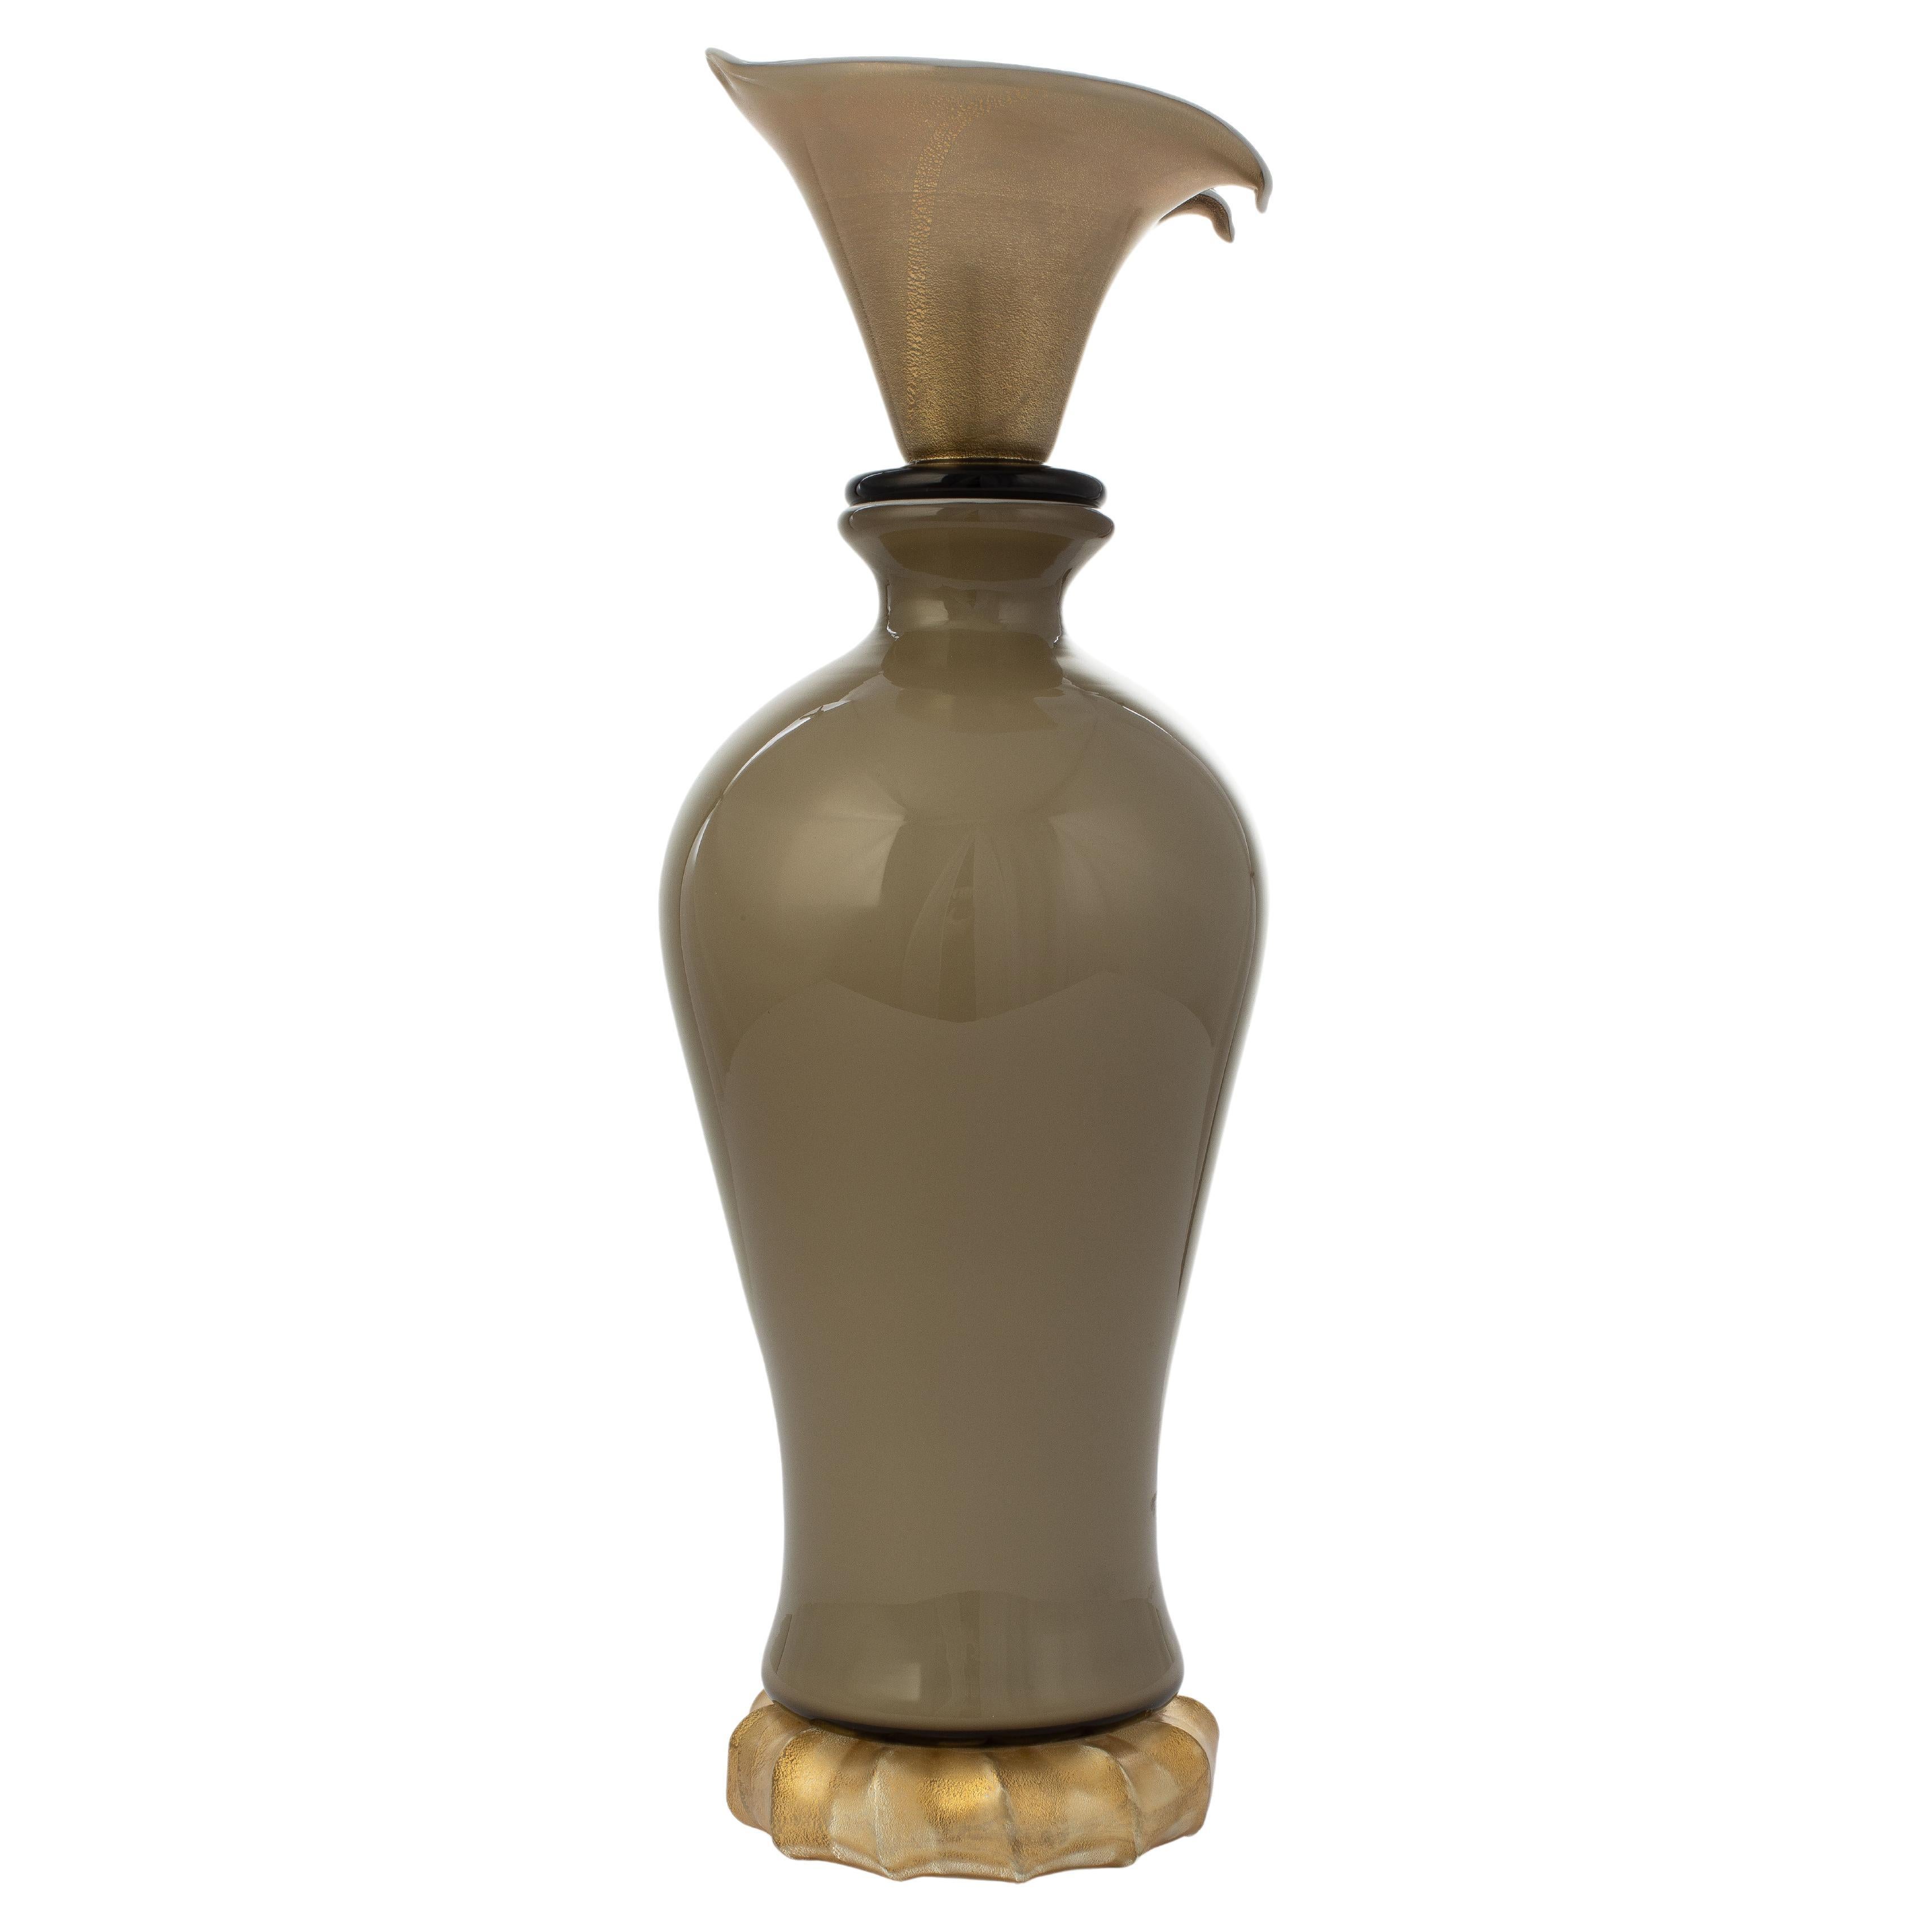 1295 Murano Hand Made Art Glass Venezia Doge Vase / Bottle For Sale